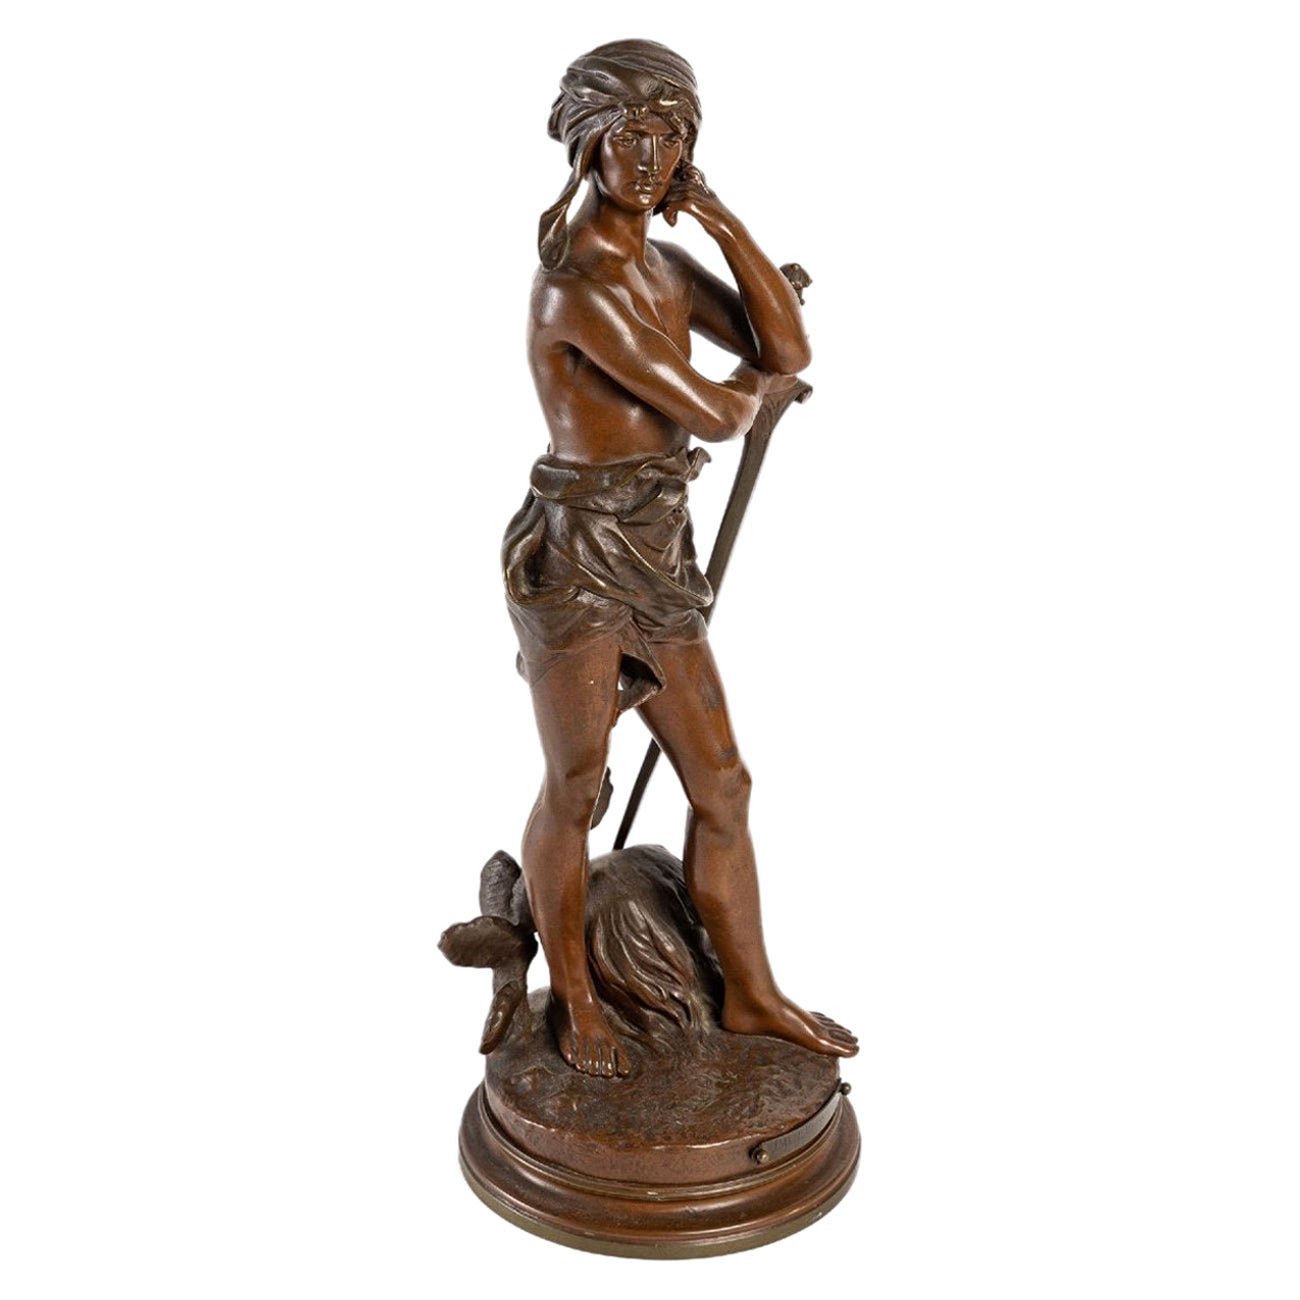 Patinierte Bronze - David Winner - Henri Plé - Gesellschaft der Bronzen von Paris -XIX.